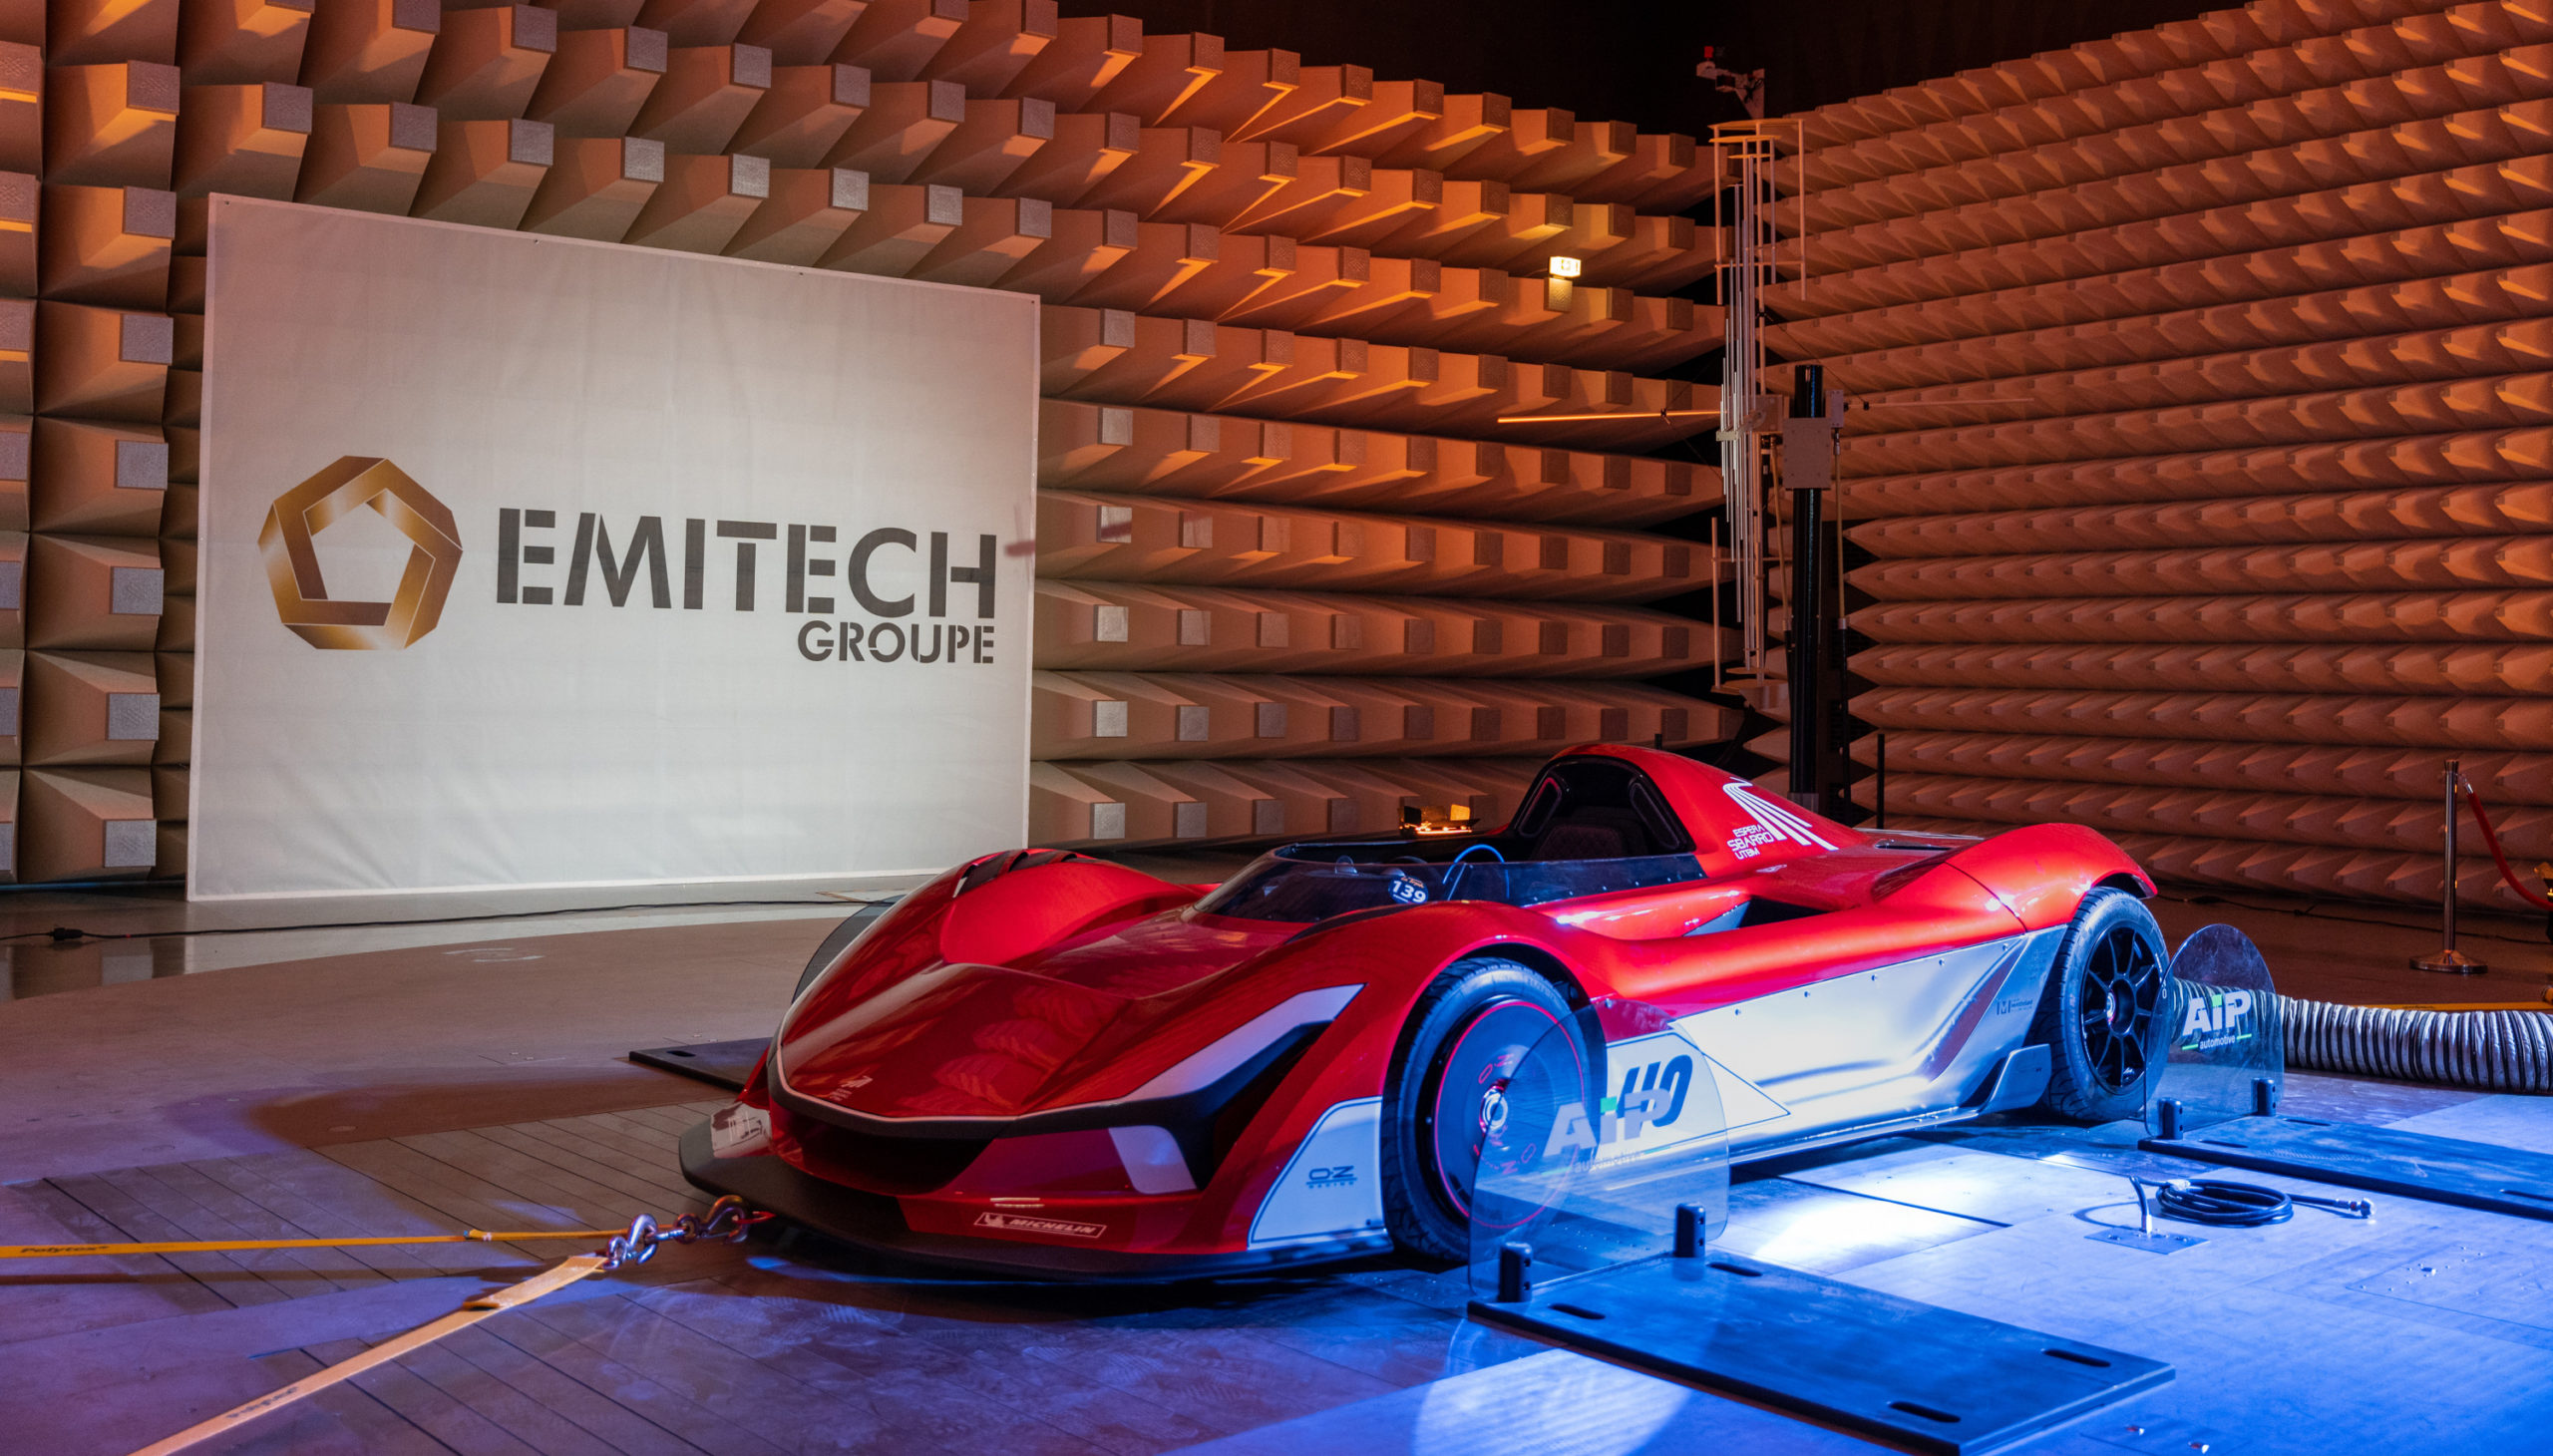 El grupo Emitech invierte 10 millones de euros en la homologación de vehículos y la calificación de grandes sistemas